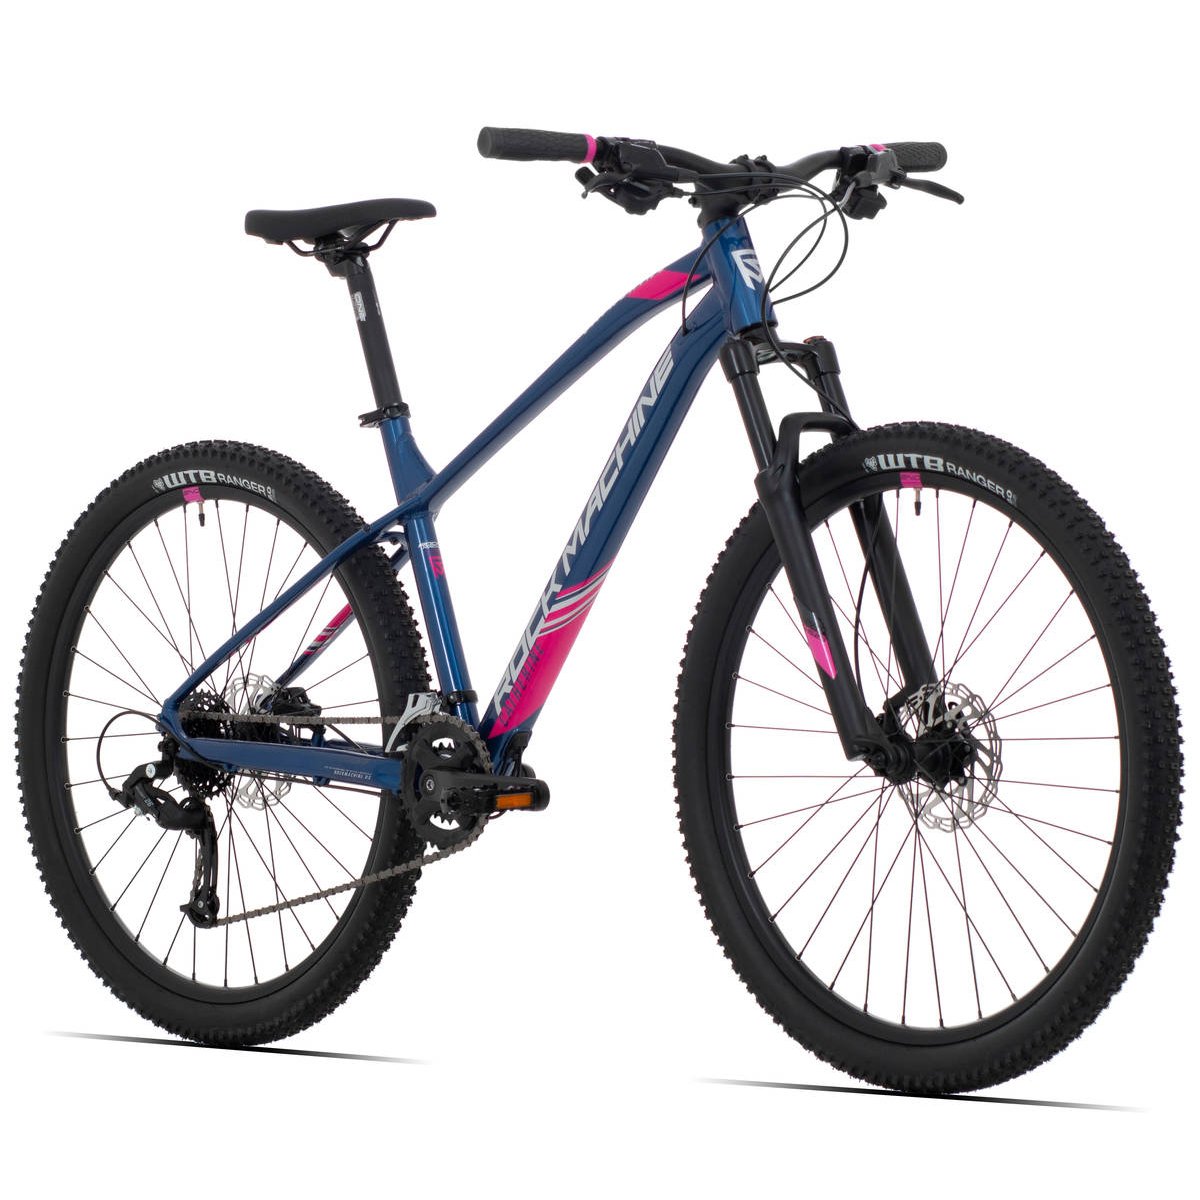 Kalnų dviratis Rock Machine 27.5 Catherine 70-27 mėlynas/rožinis (L) - 6